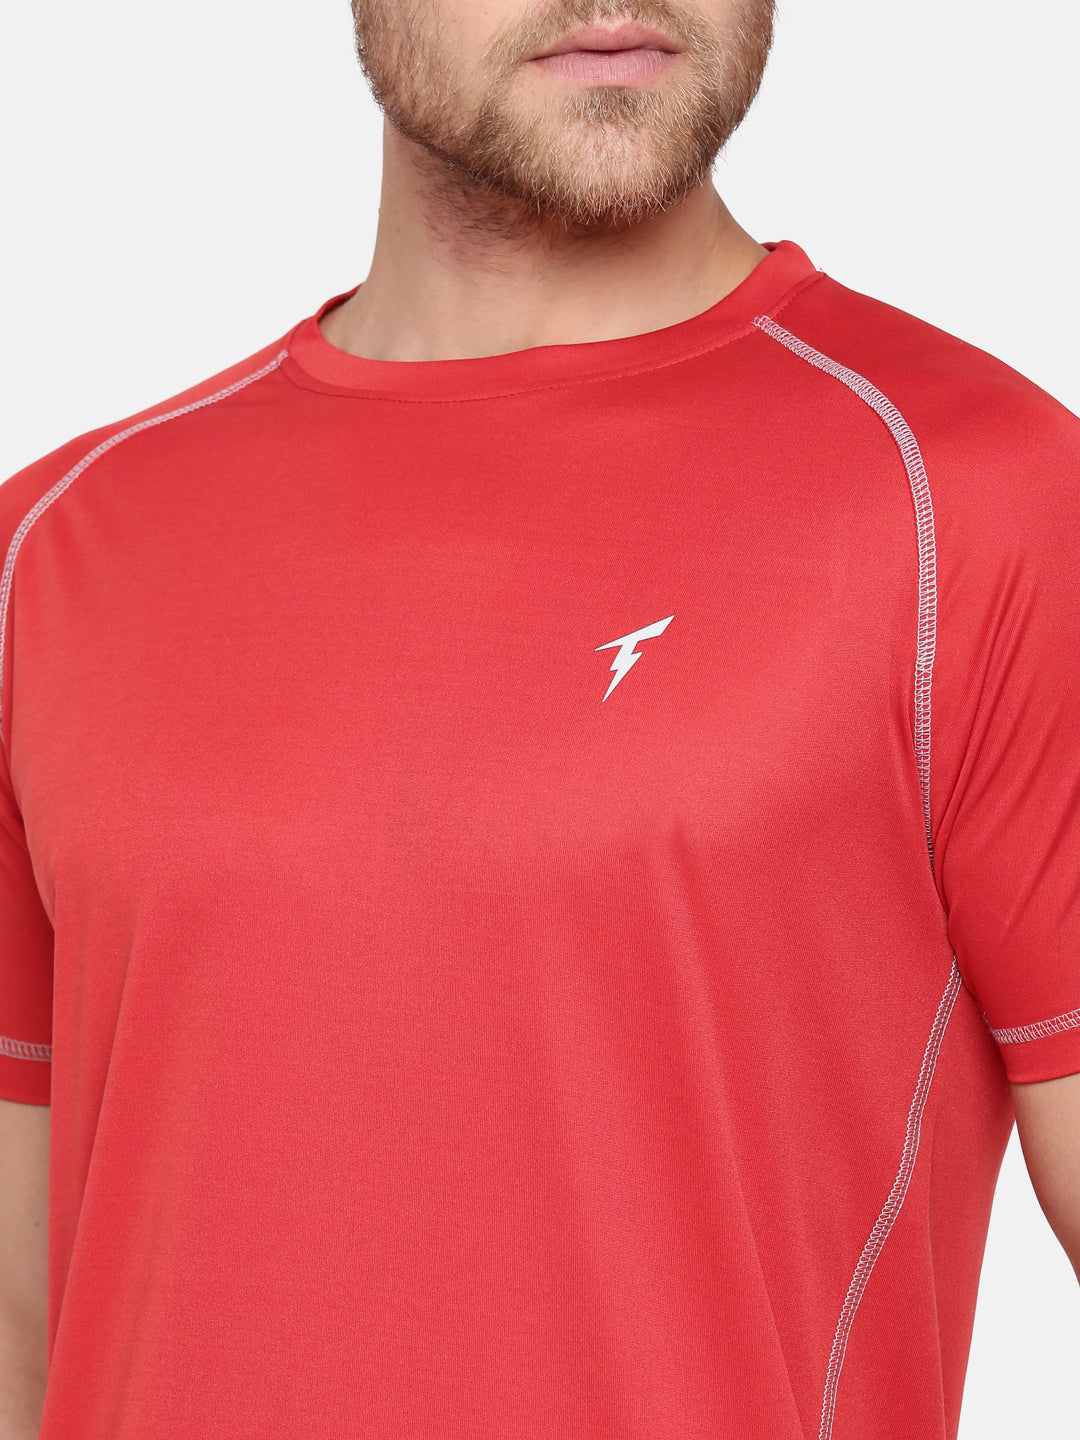 The Raglan Sleeve Athletic Tee - Red